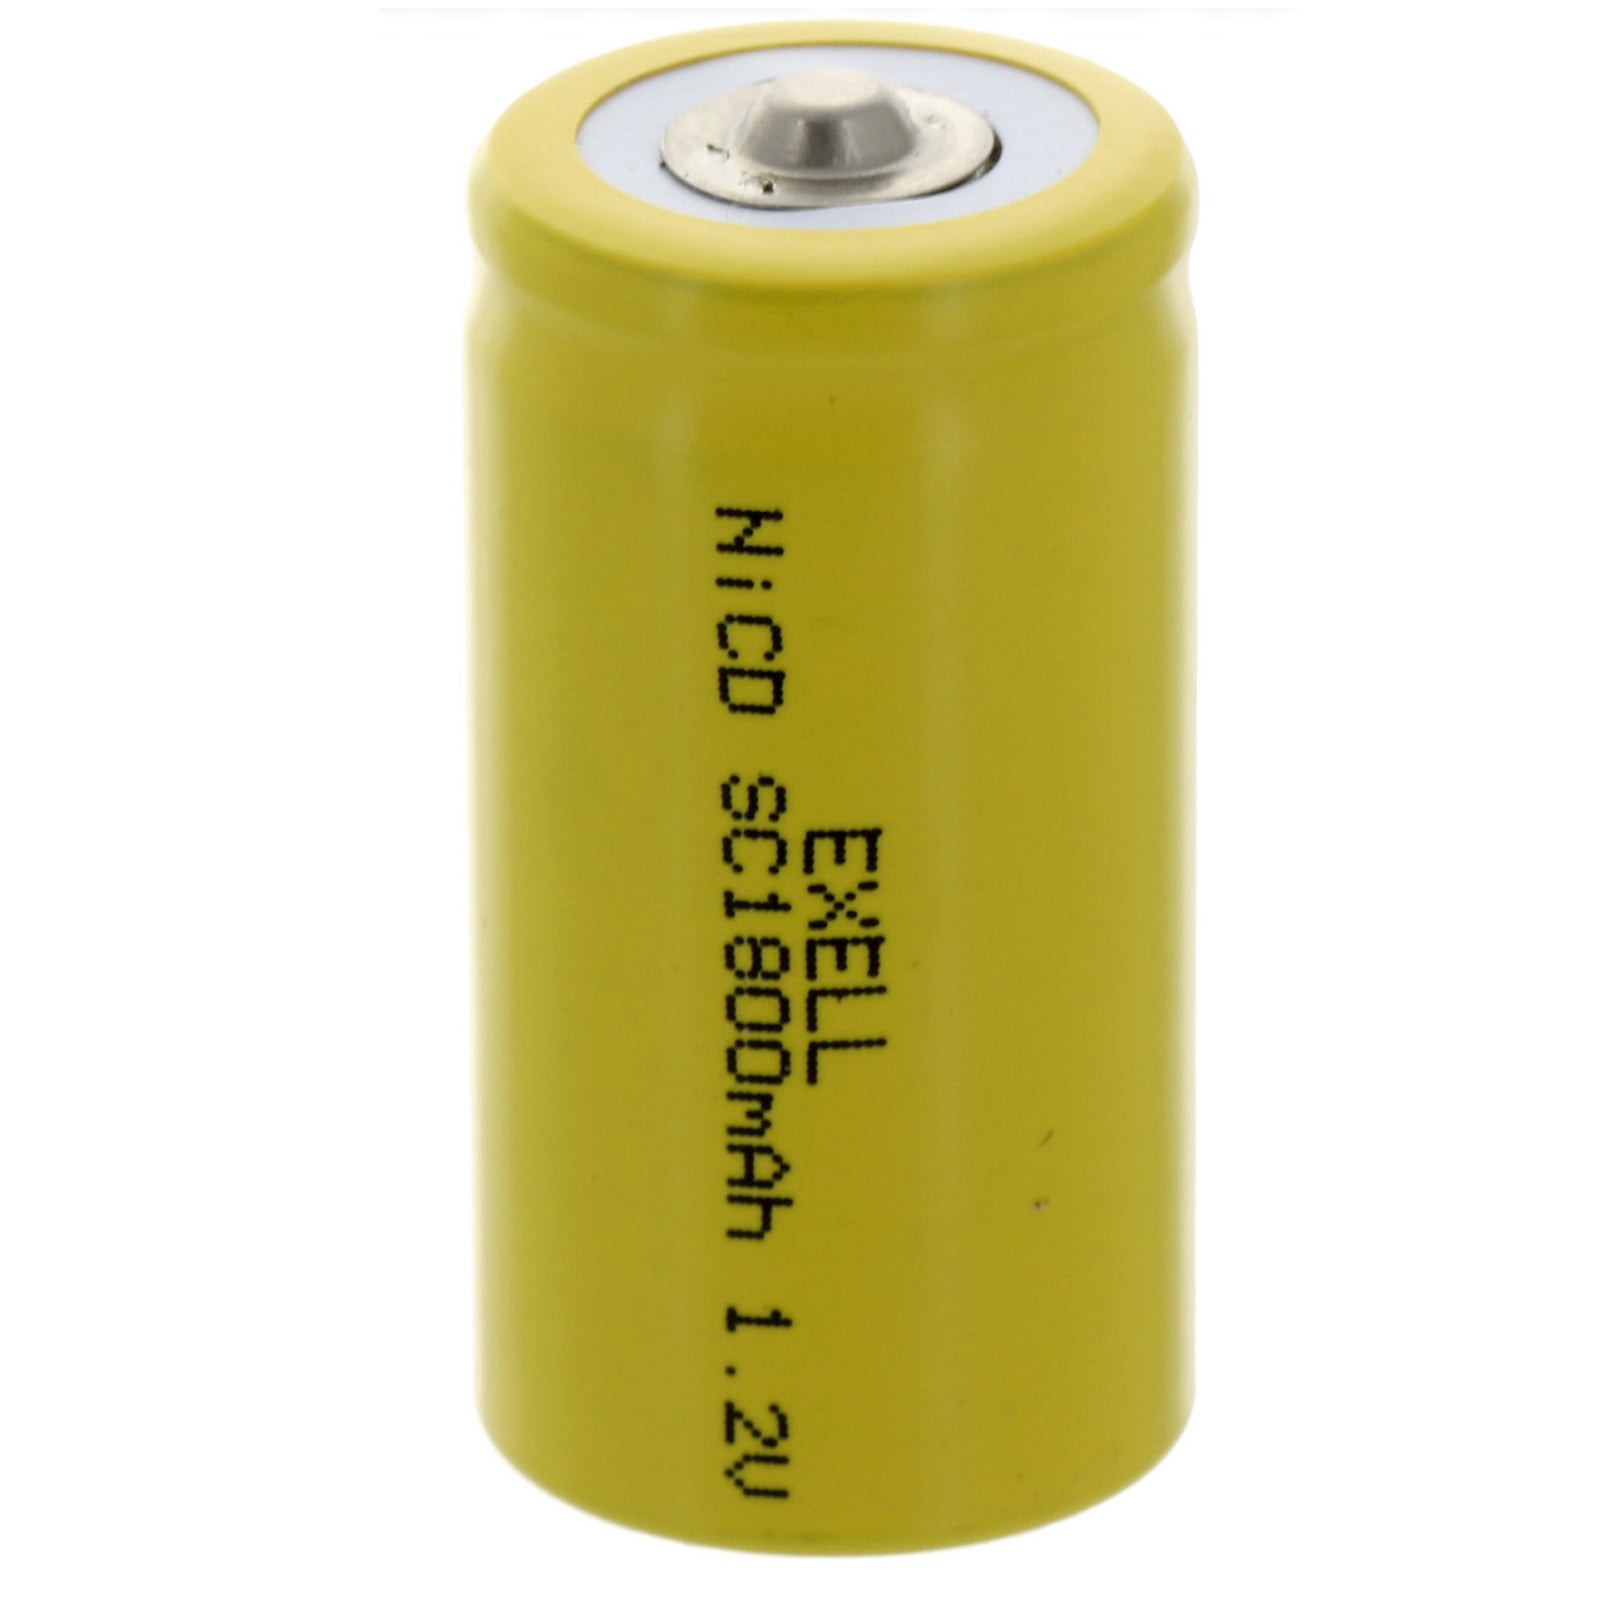 Internal battery. Аккумуляторы 084. SF (super fast) Battery.